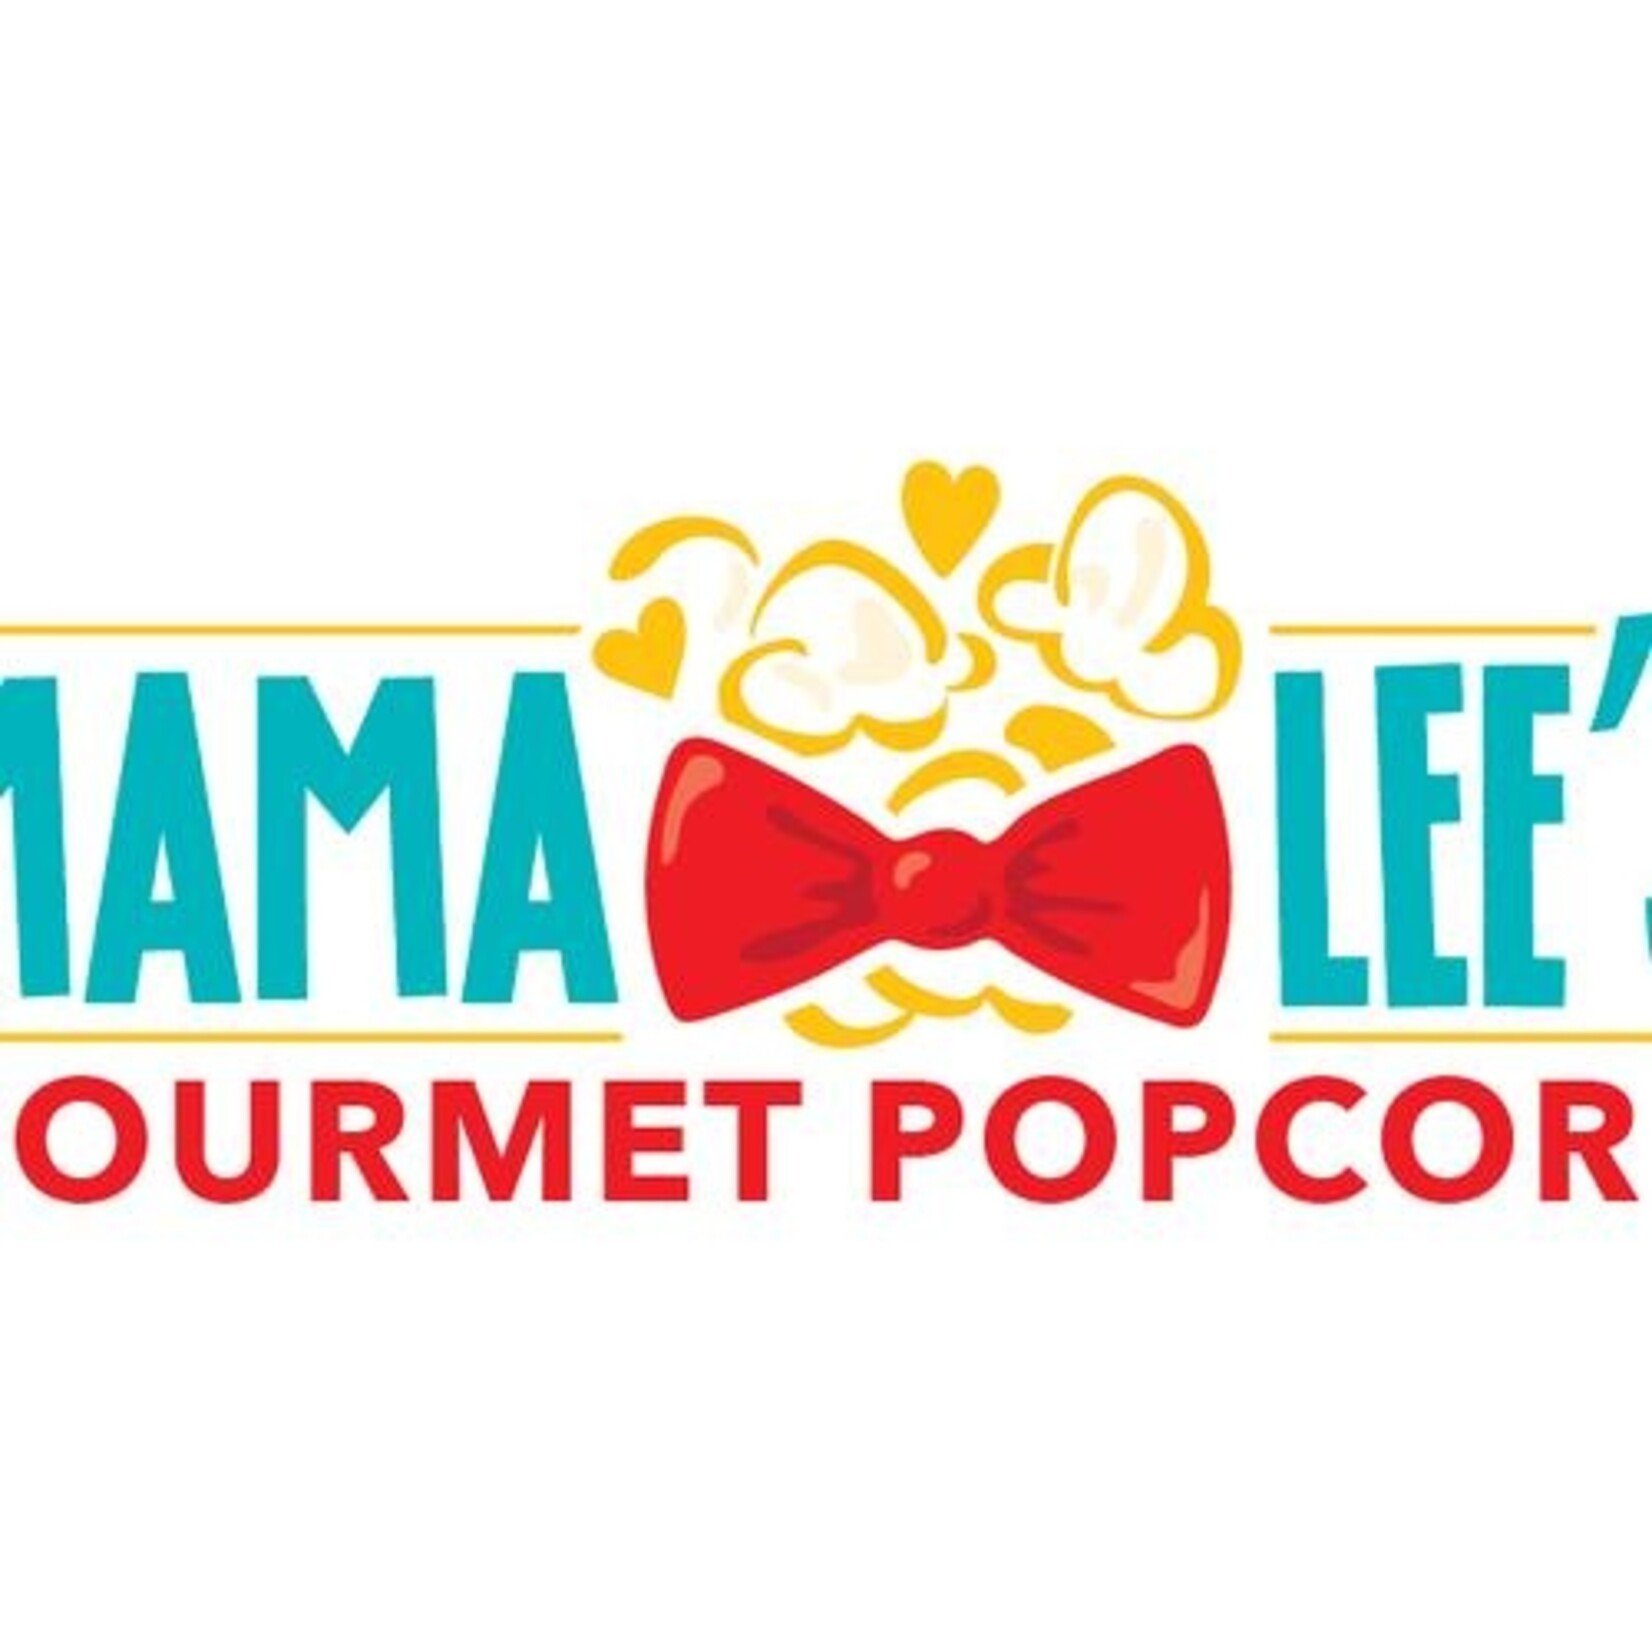 Mama Lee's Gourmet Popcorn-Elgin Mama Lee's Gourmet Popcorn-Elgin $5.99 Medium size bag popcorn